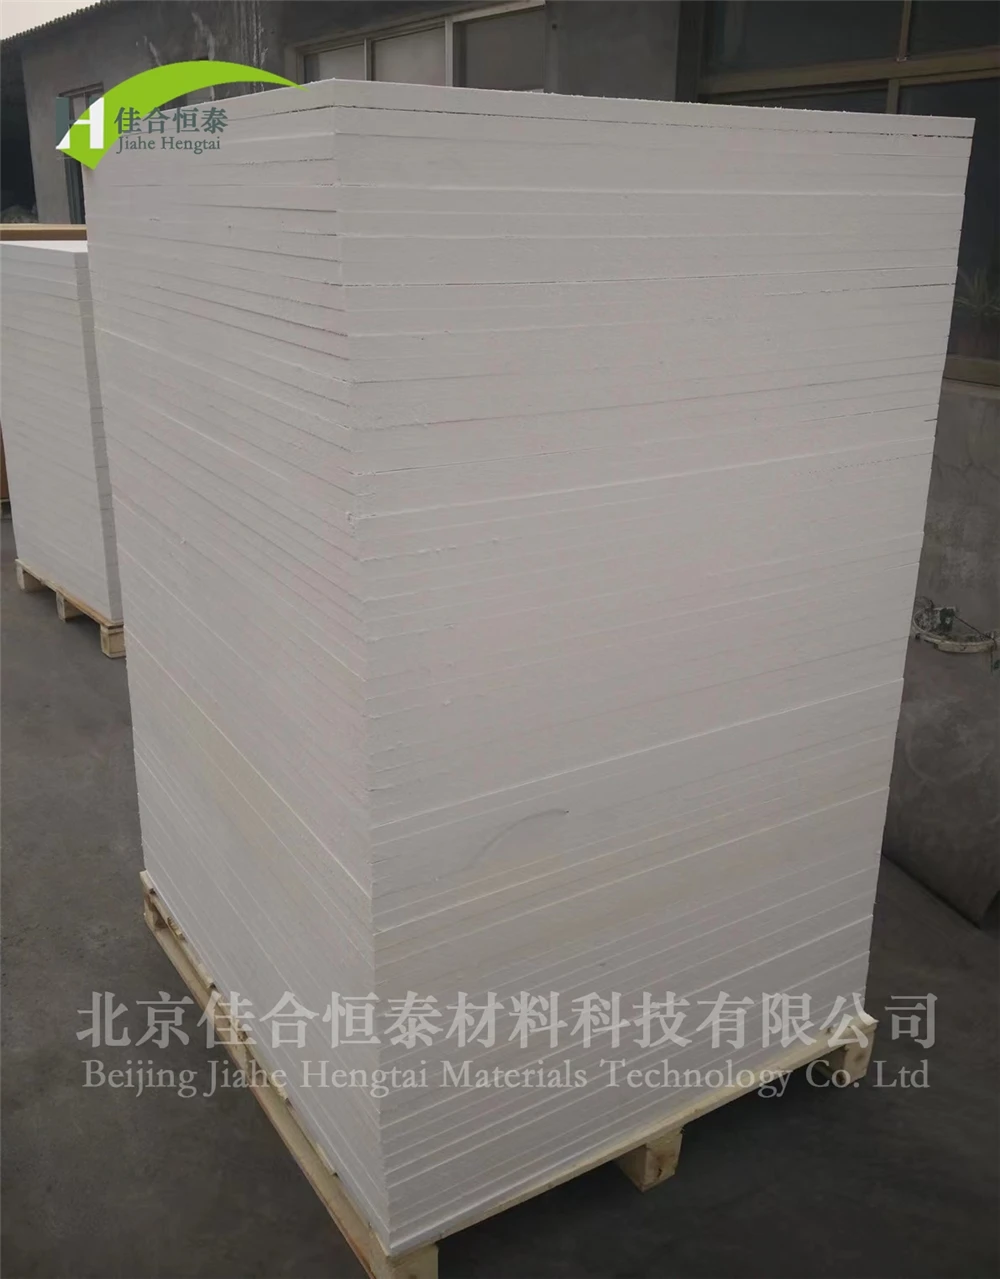 High Grade Insulation Vacuum Formed Refractory Ceramic Fiber Board